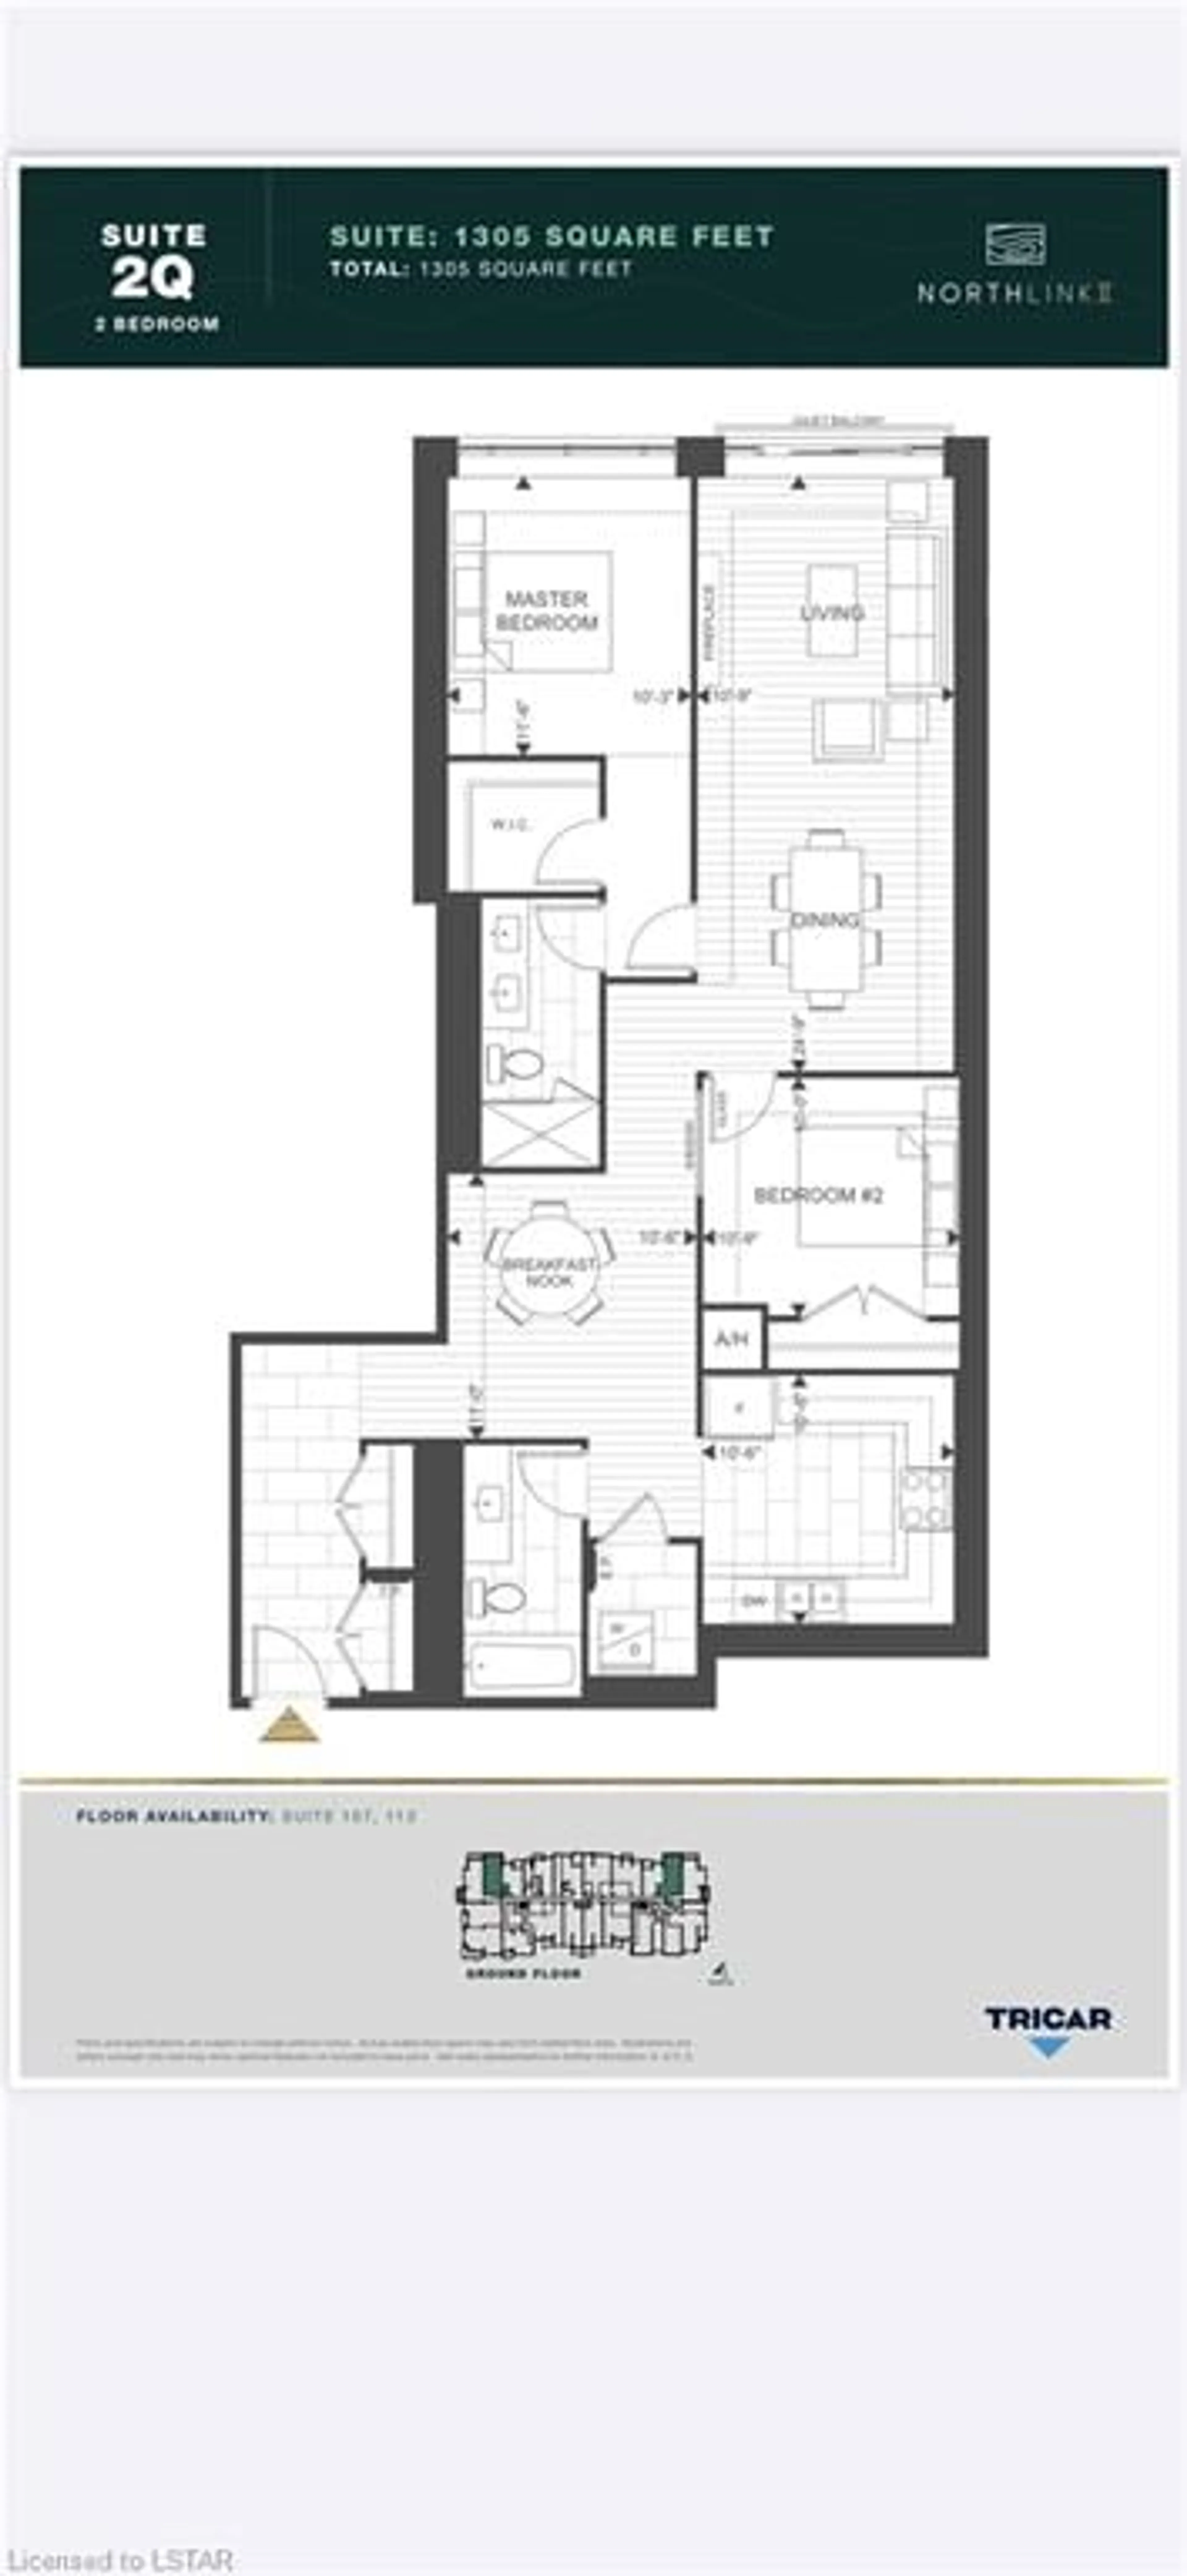 Floor plan for 480 Callaway Rd #107, London Ontario N6G 0Z3